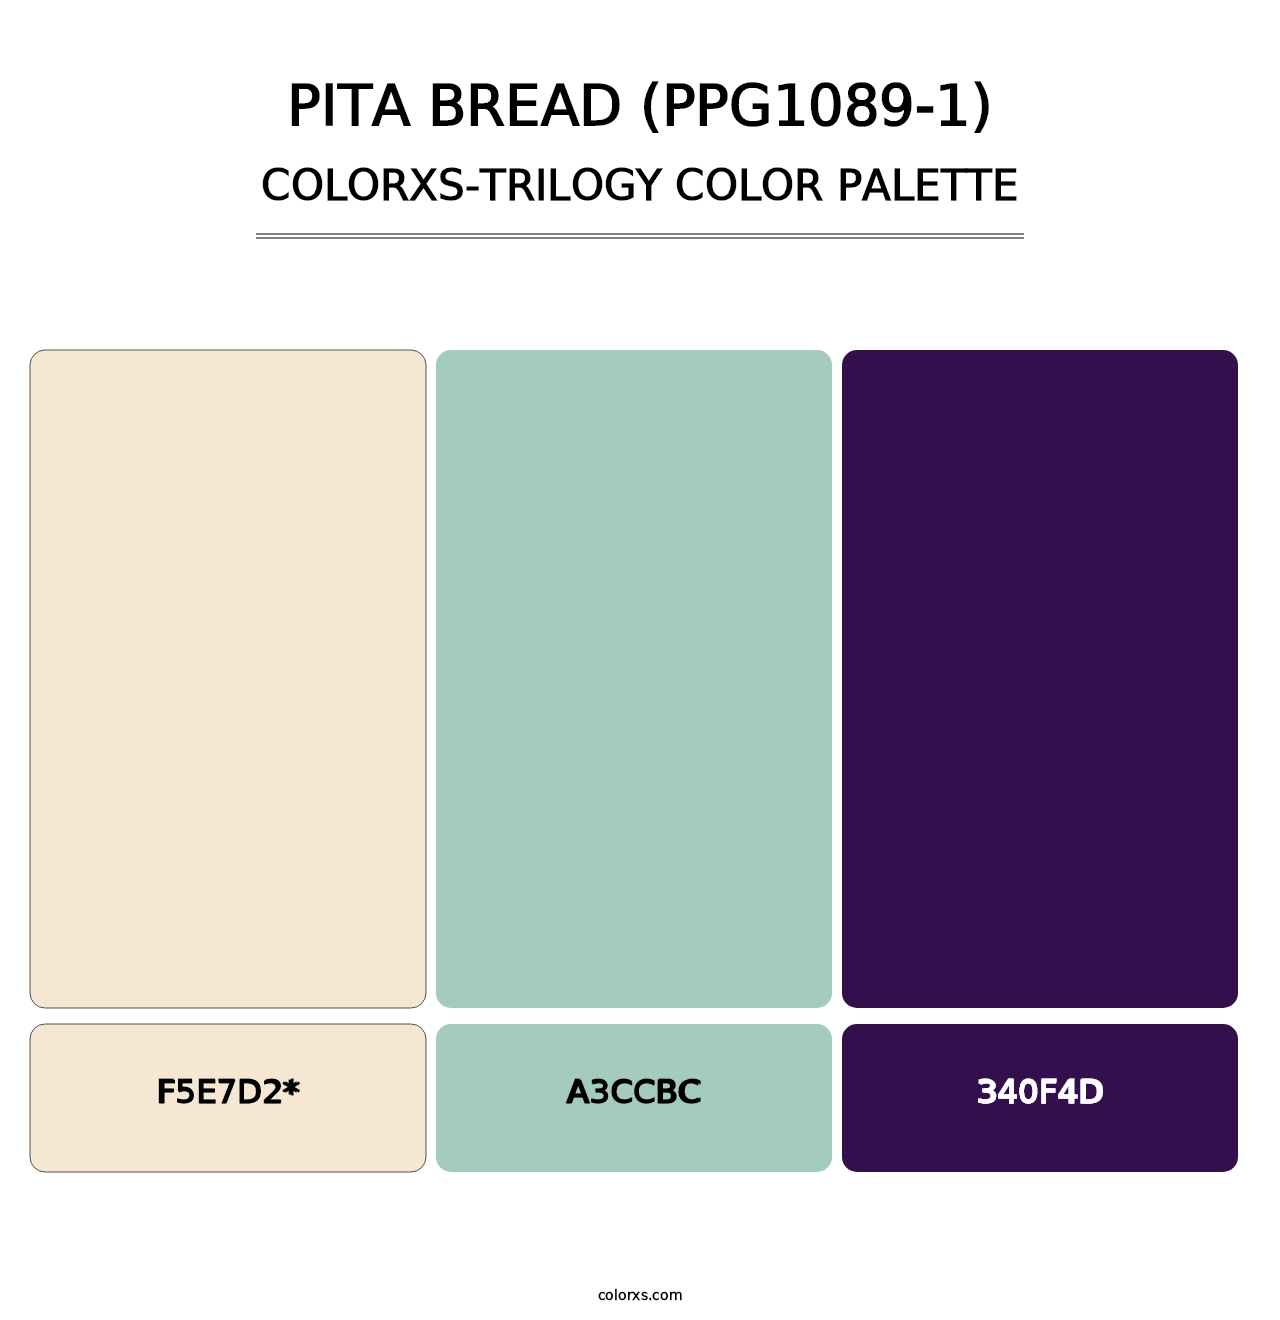 Pita Bread (PPG1089-1) - Colorxs Trilogy Palette